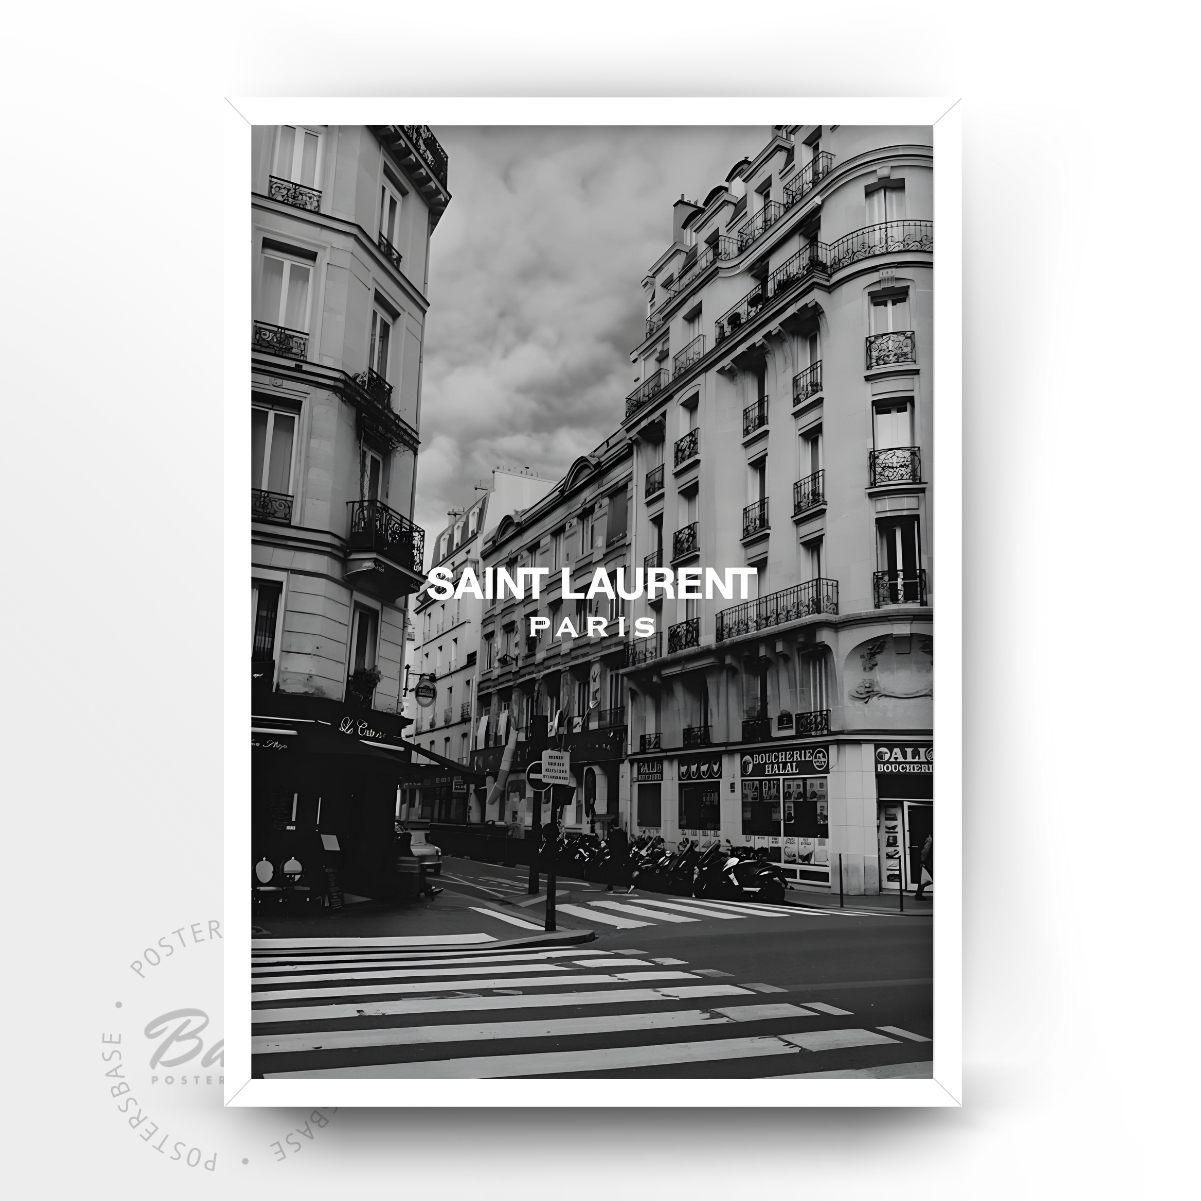 Yves Saint Laurent Paris